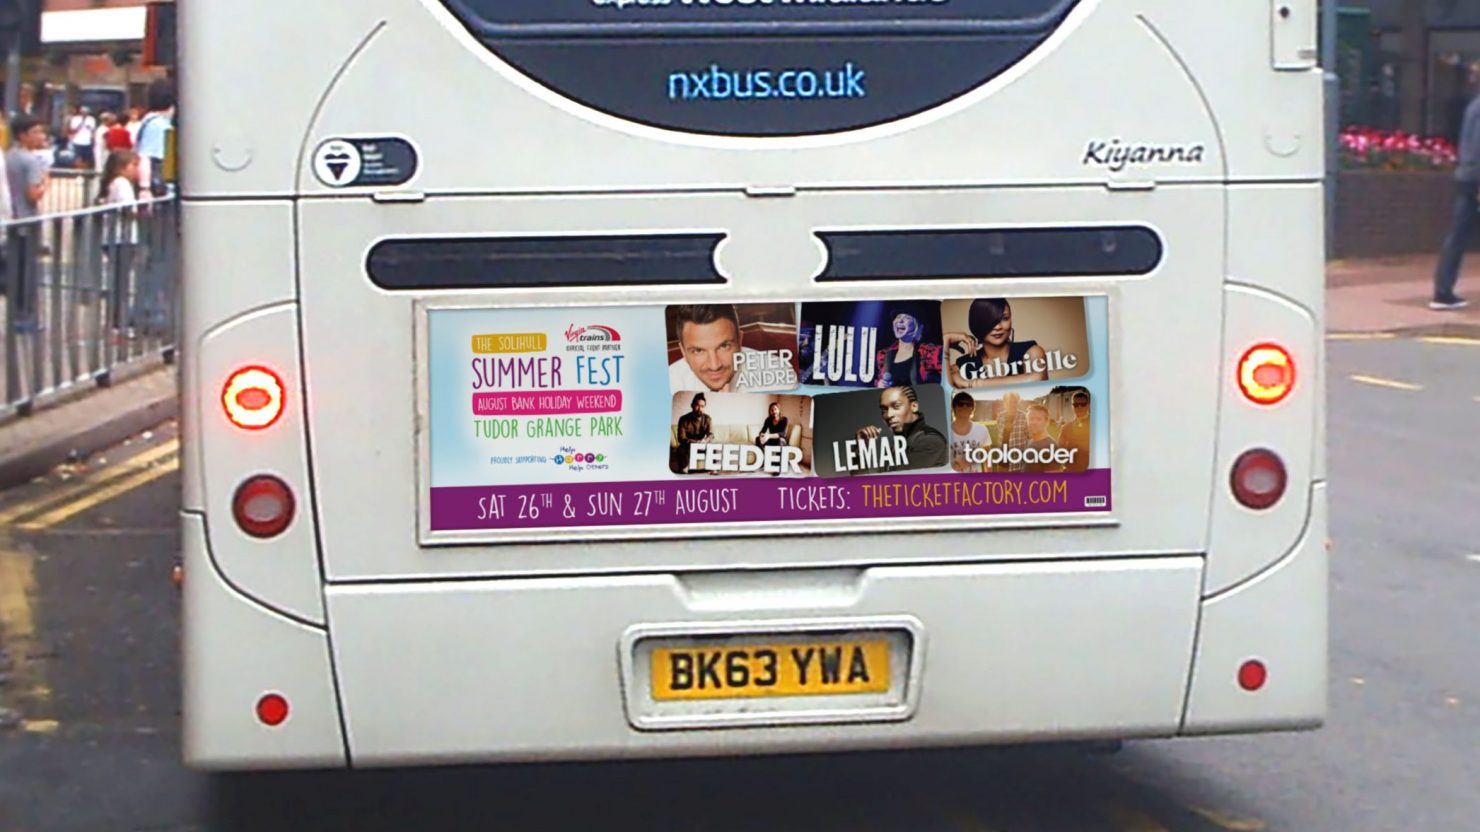 Bus rear advert design for Solihull Summerfest Music festival event in Tudor Grange Park